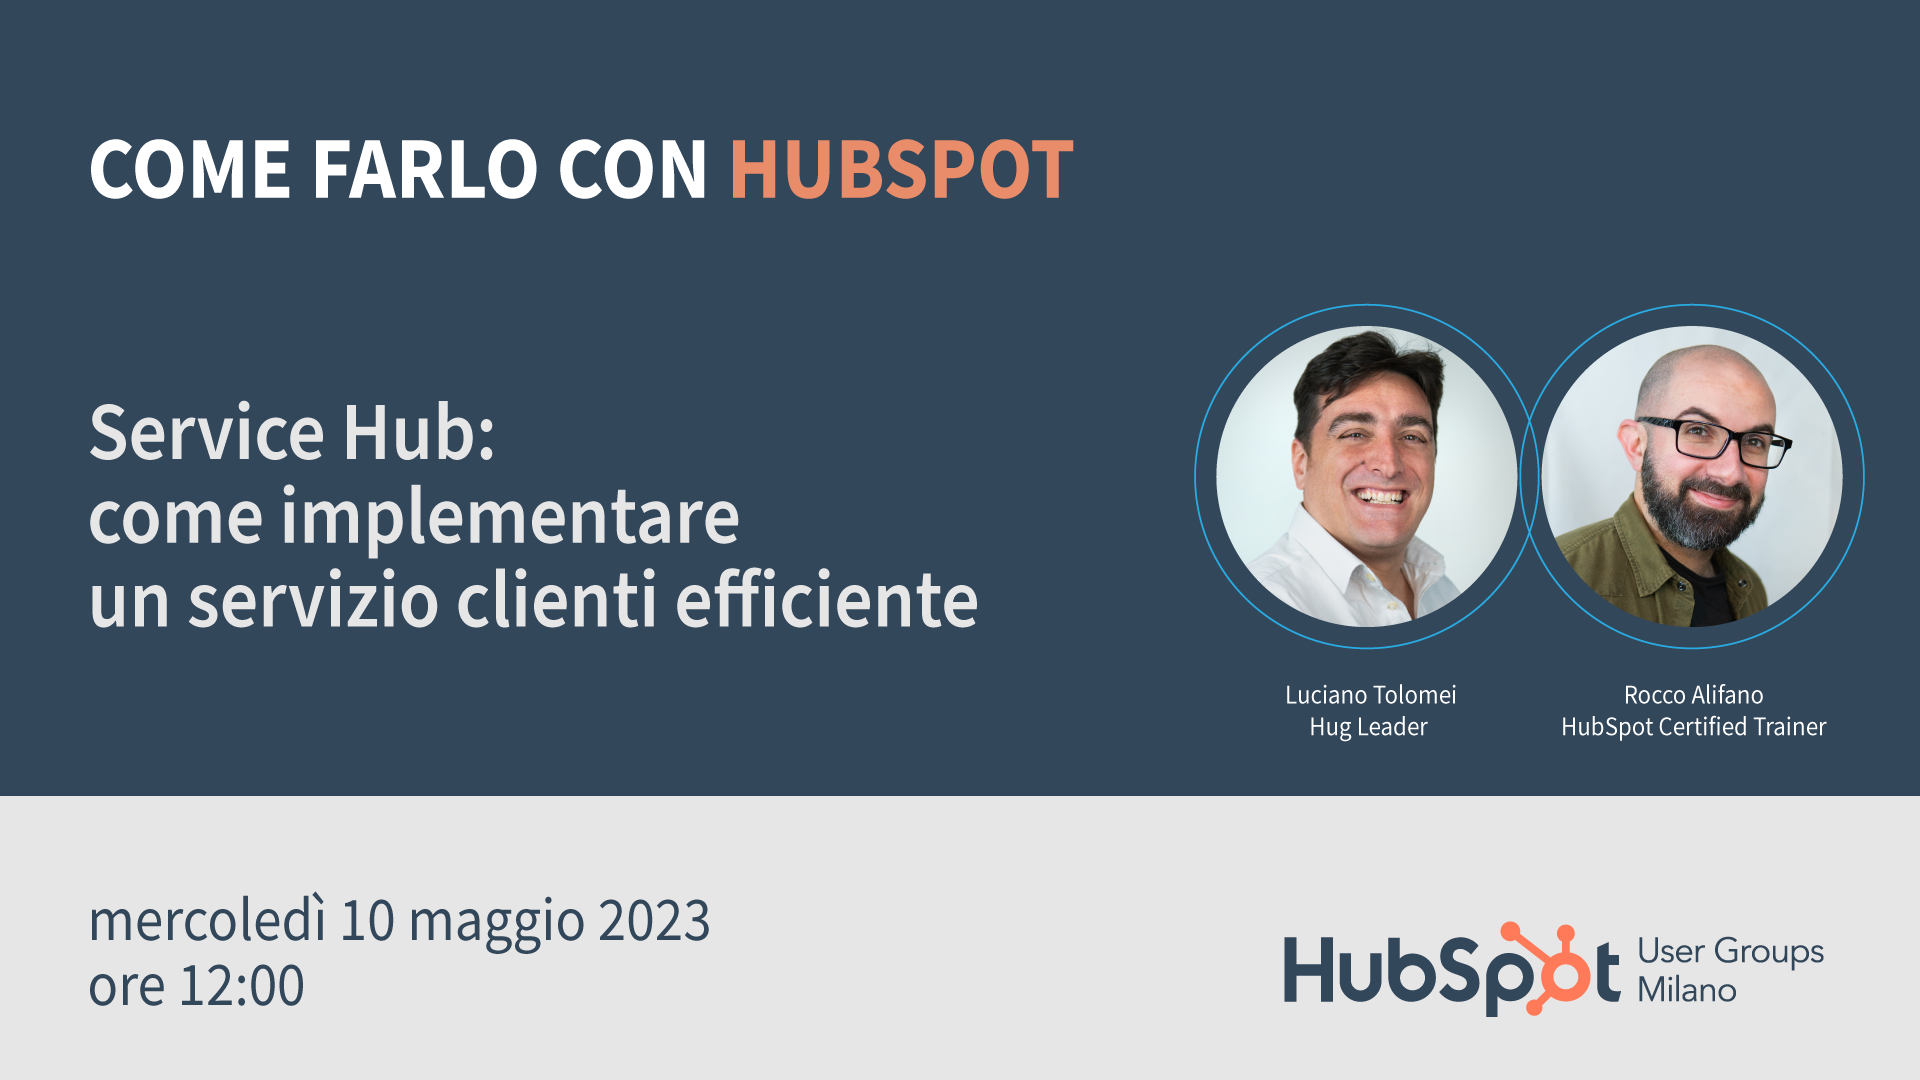 Service Hub: come implementare un servizio clienti efficiente